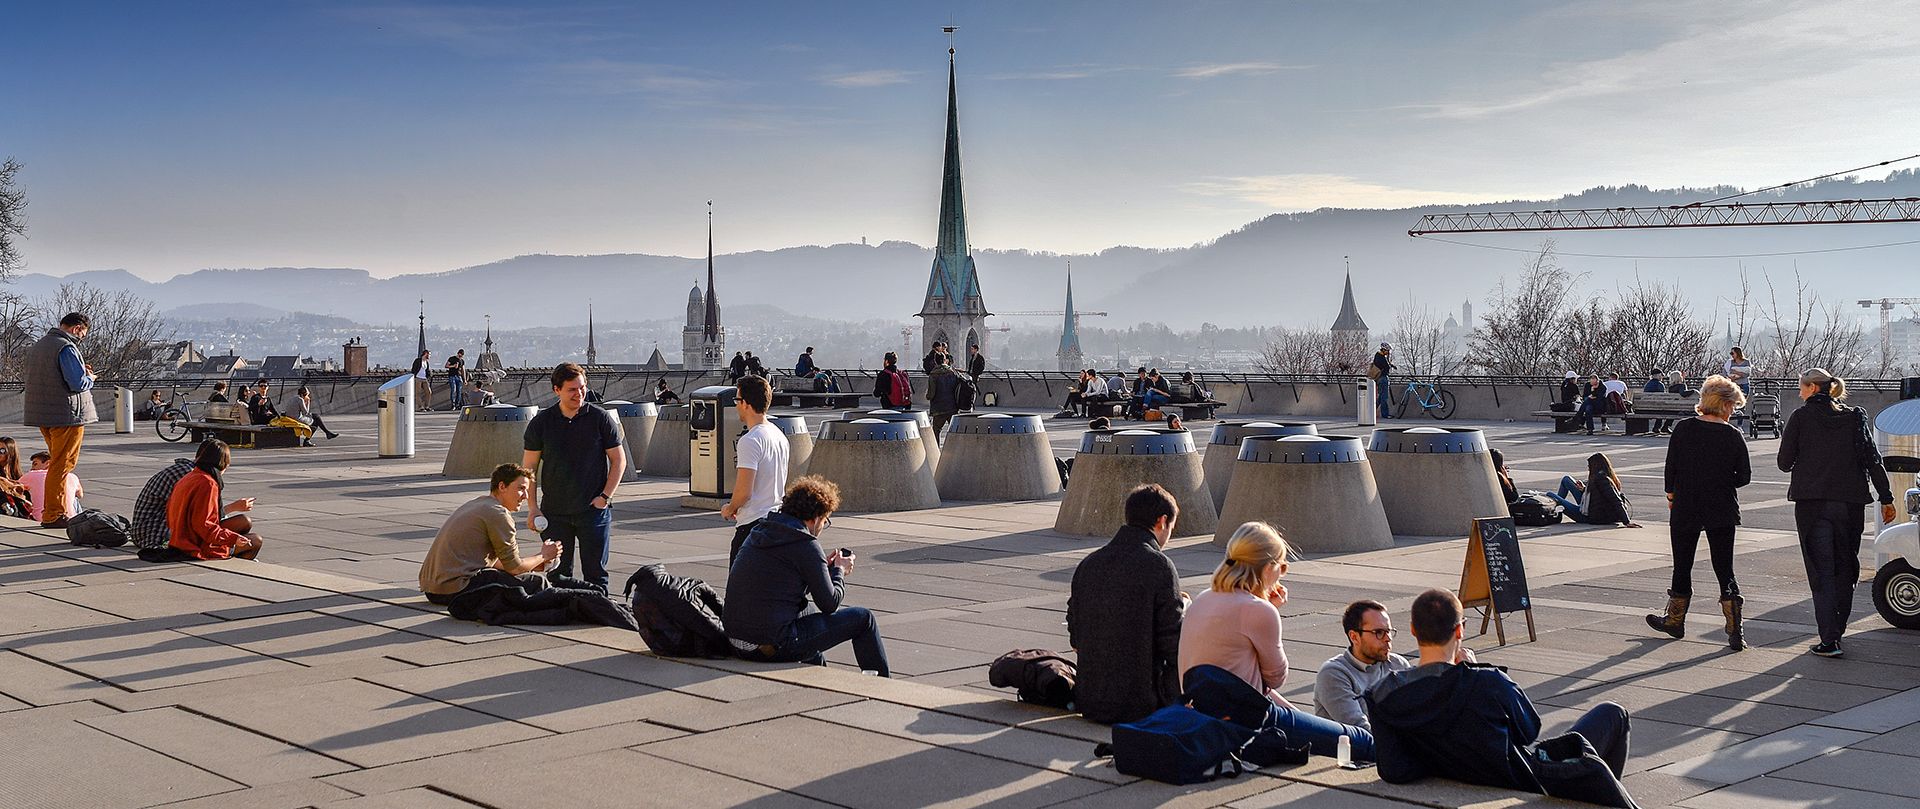 Menti lucide provenienti da università e uffici di pianificazione devono contribuire al Progetto territoriale:  Terrazza del Politecnico federale con vista su Zurigo